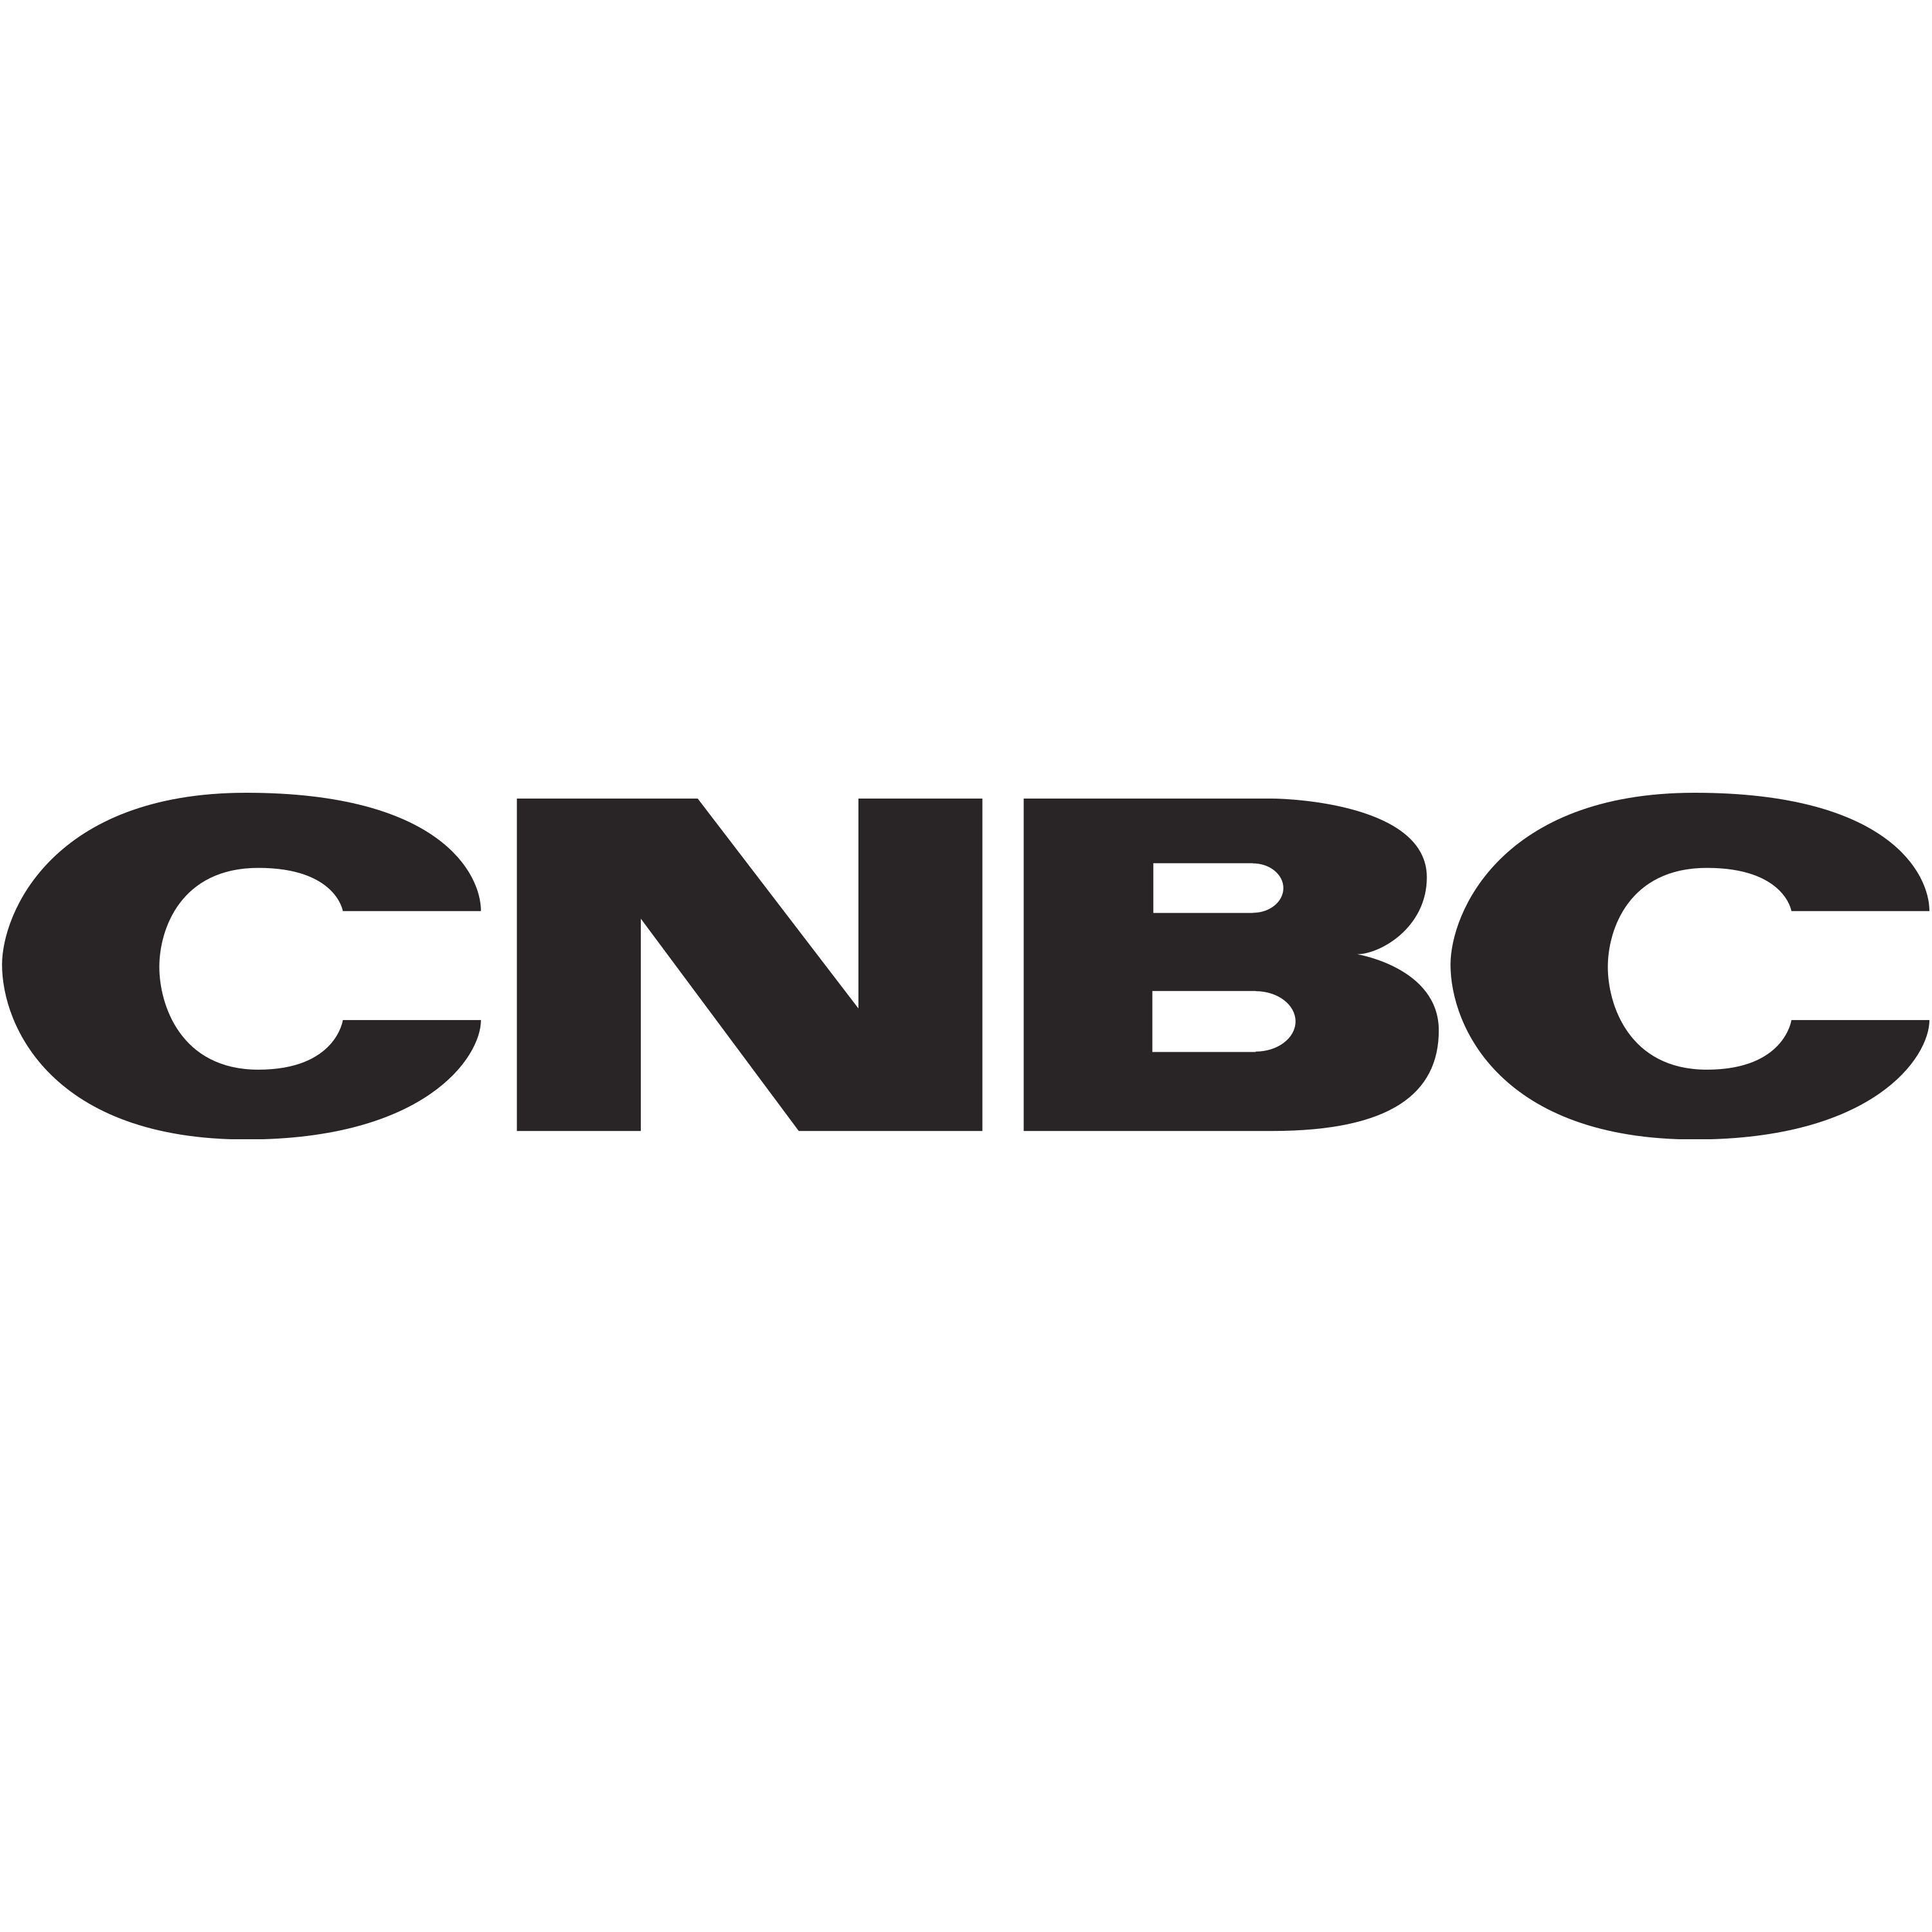 CNBC Logo Transparent Picture